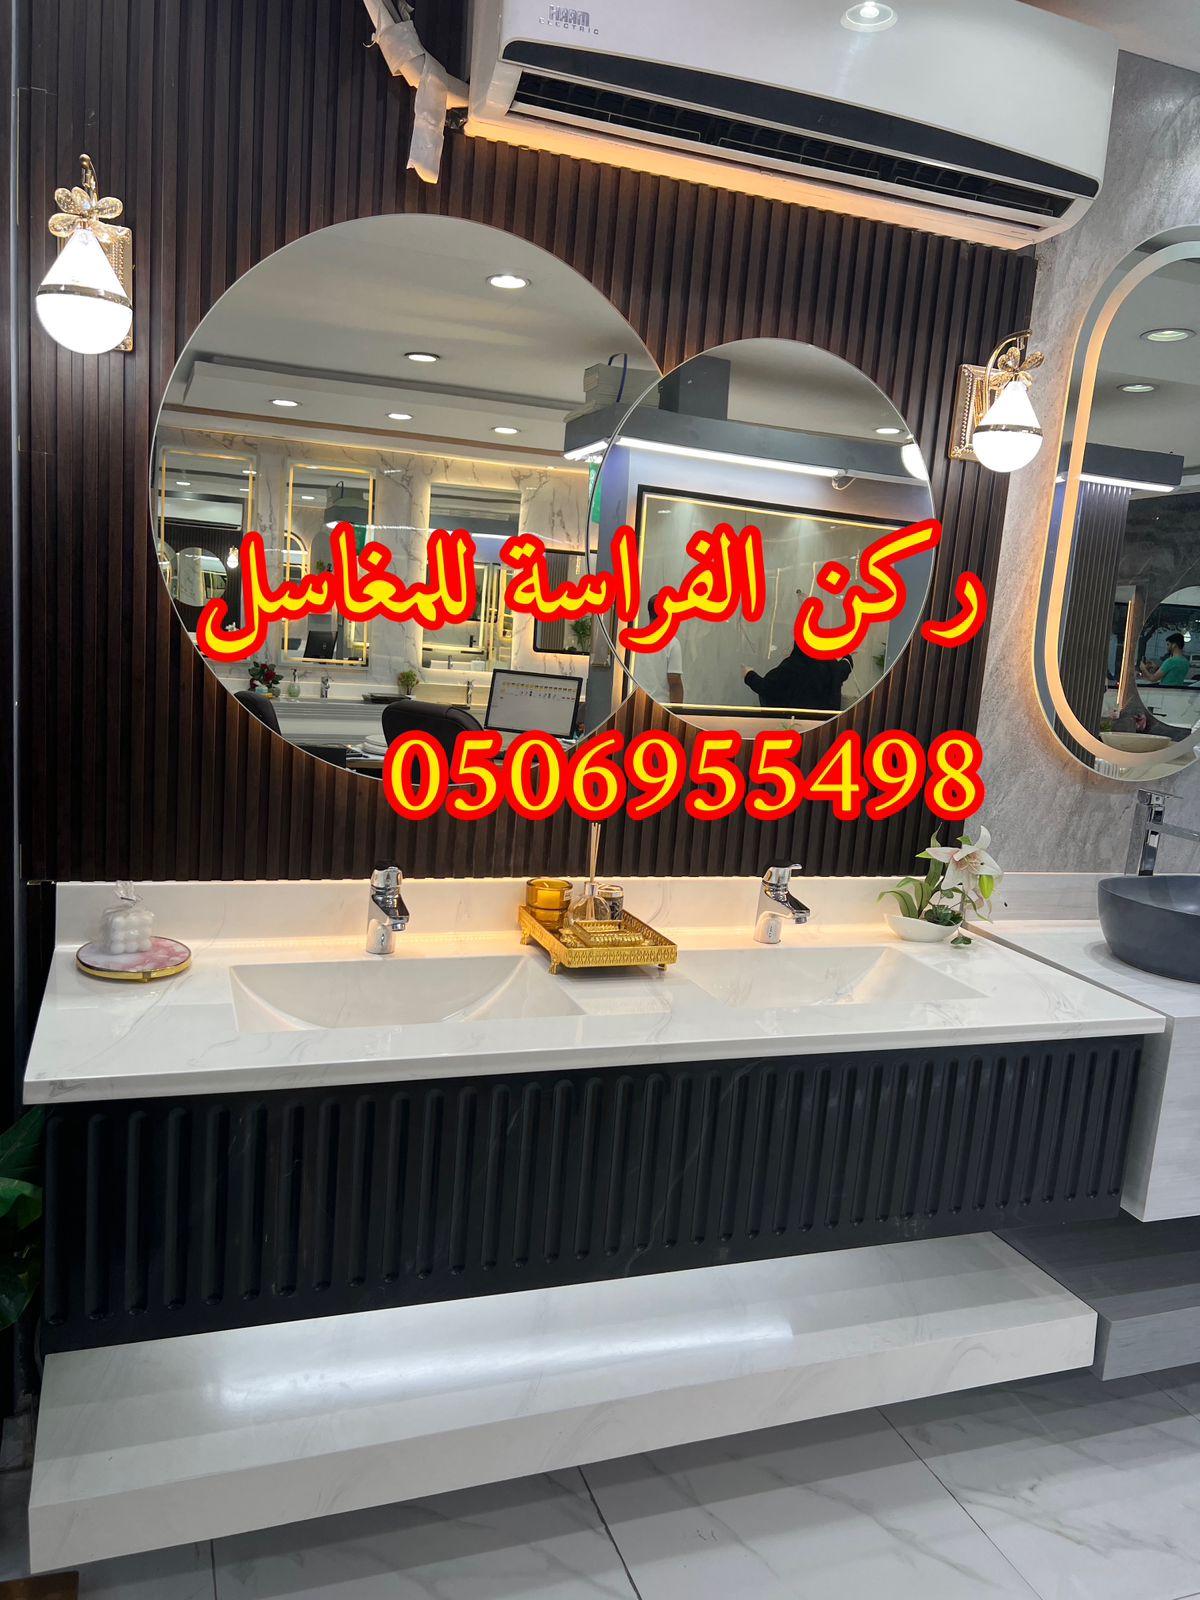 الرياض - تركيب مغاسل حمامات رخام في الرياض, 0506955498 457444111